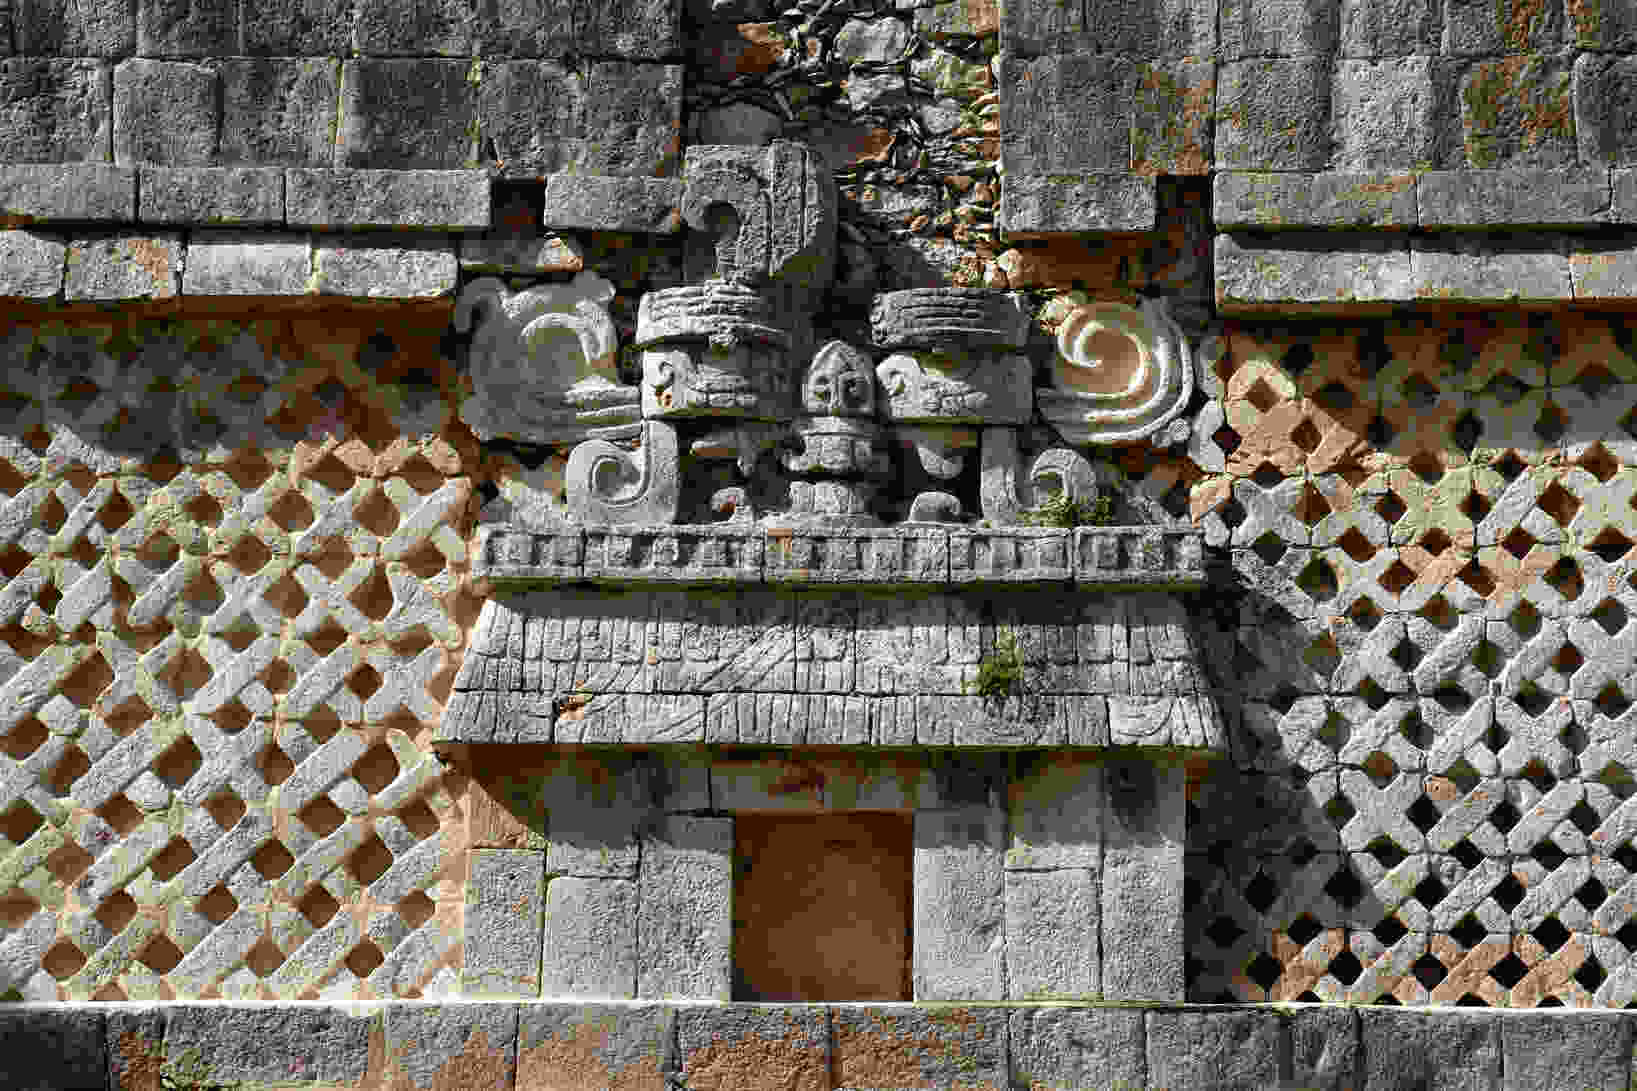 Edzna, Campeche : découvrez cette cité Maya presque méconnue